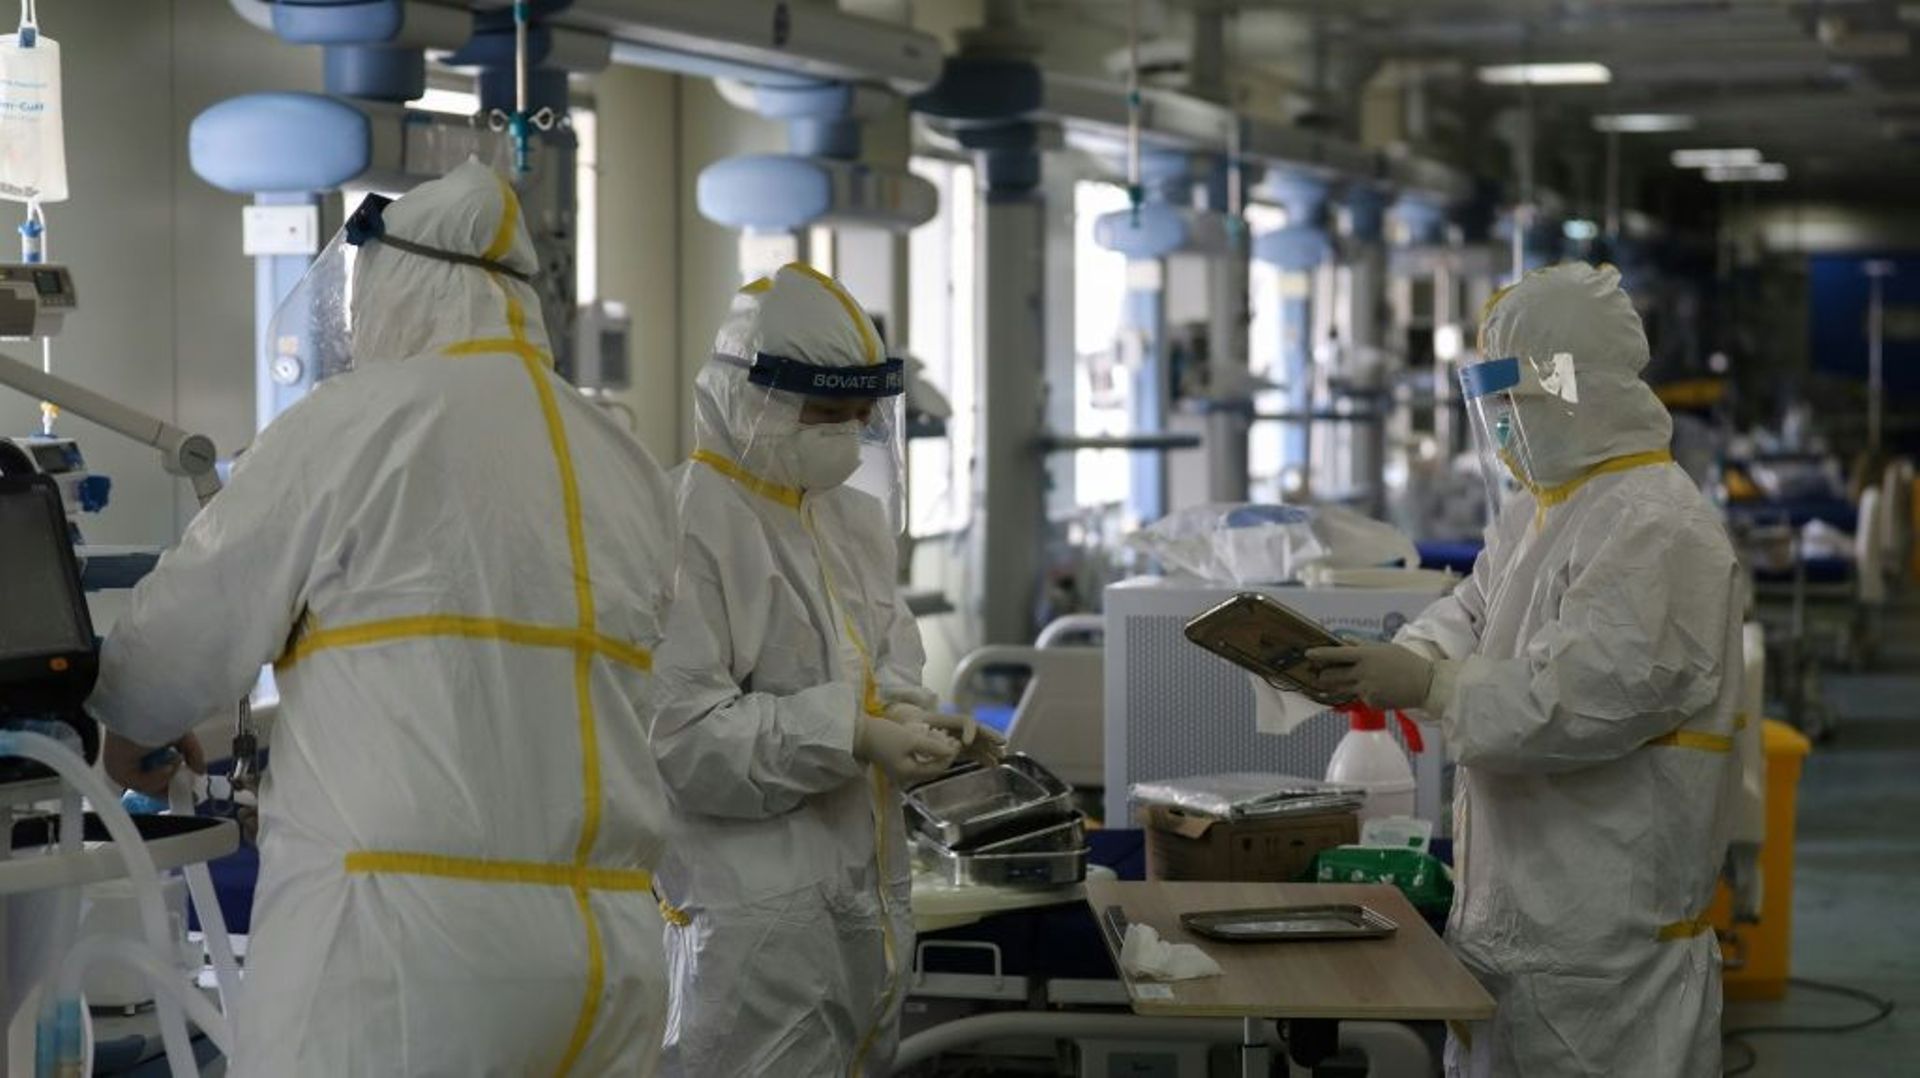 Le personnel d'un hôpital de Wuhan (Chine) désinfecte une unité réservée à des malades touchés par le coronavirus, le 12 mars 2020